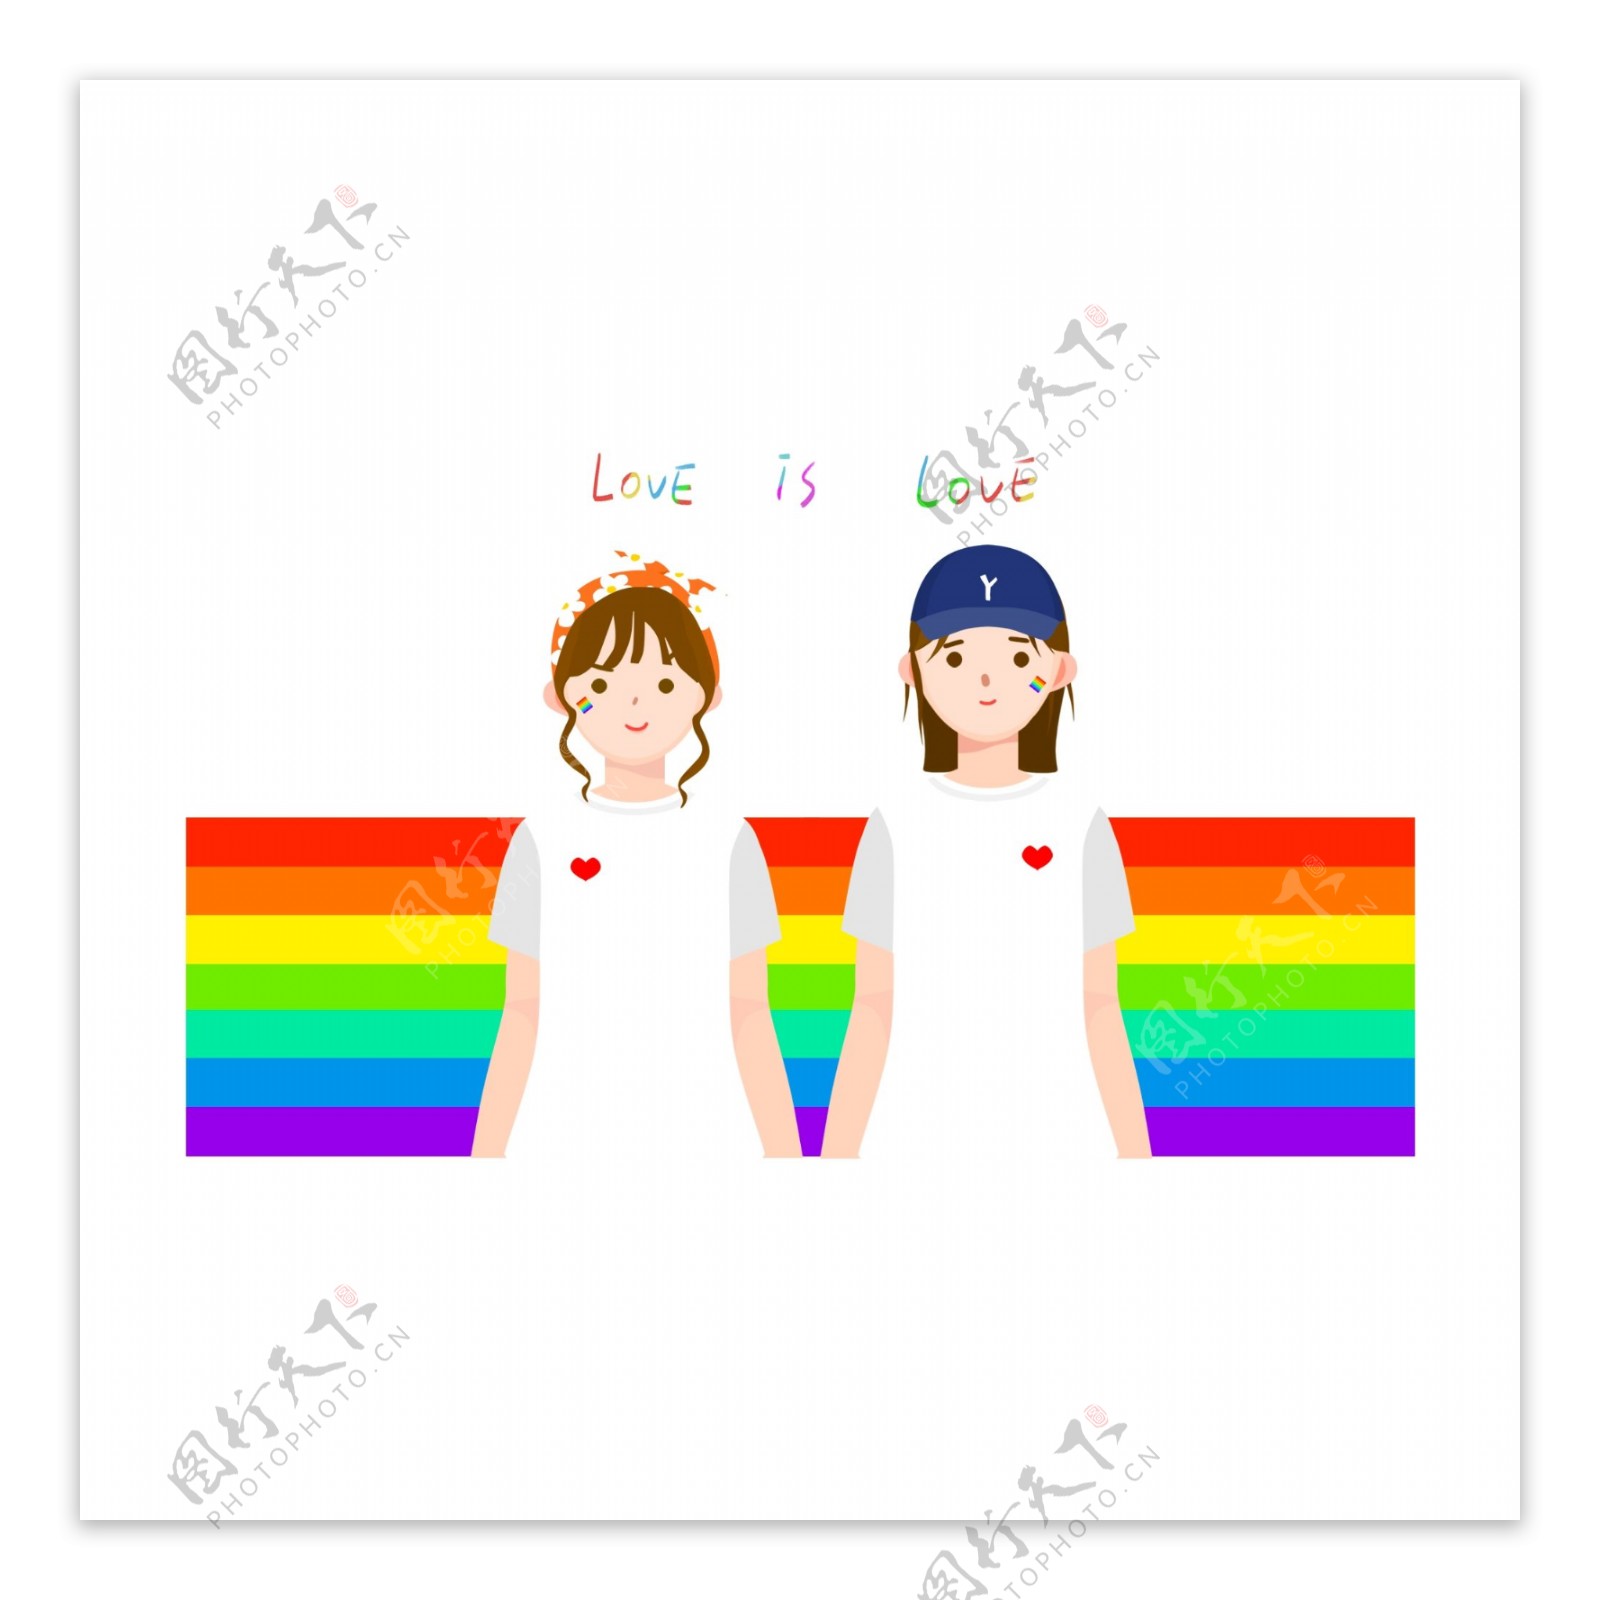 女同性恋亲女. 女同性恋. 库存图片. 图片 包括有 同性恋, 方式, 容差, 亲吻, 友谊, 纵向, 护肤 - 238353309